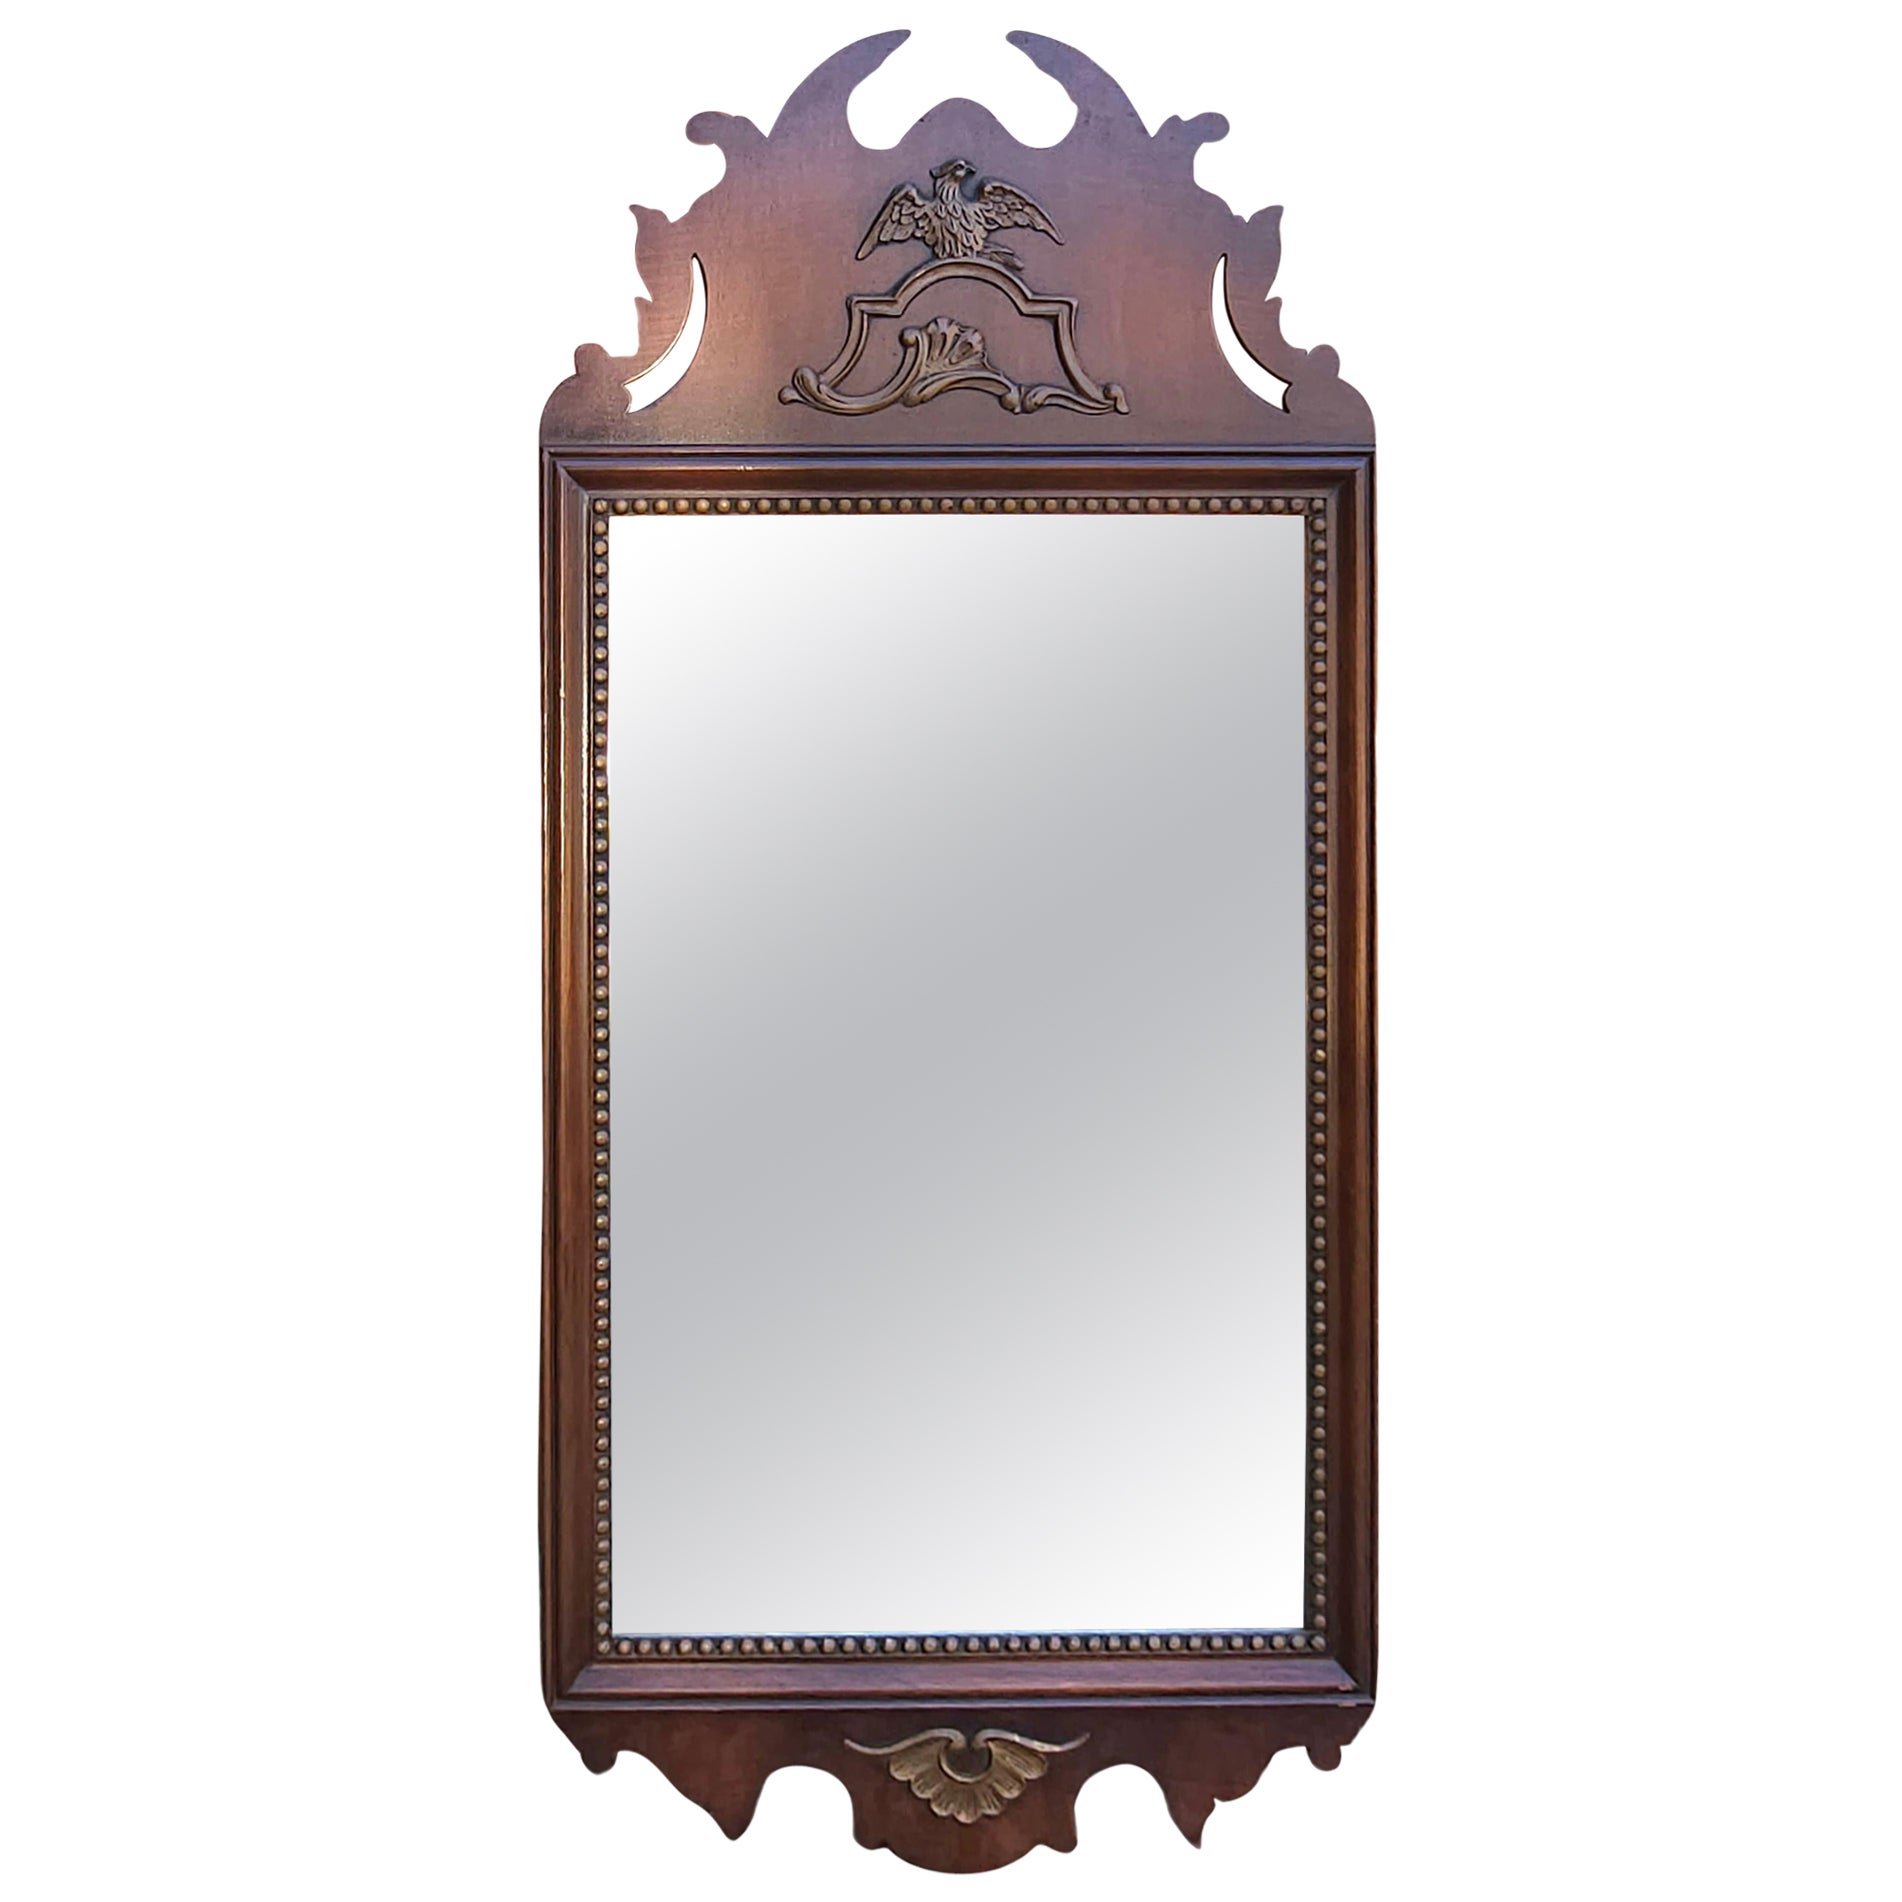 Kindel Federal Style Eagle and Parcel Gilt Decorated Mahogany Frame Mirror (Miroir de style fédéral avec aigle et colis décoré de dorures)